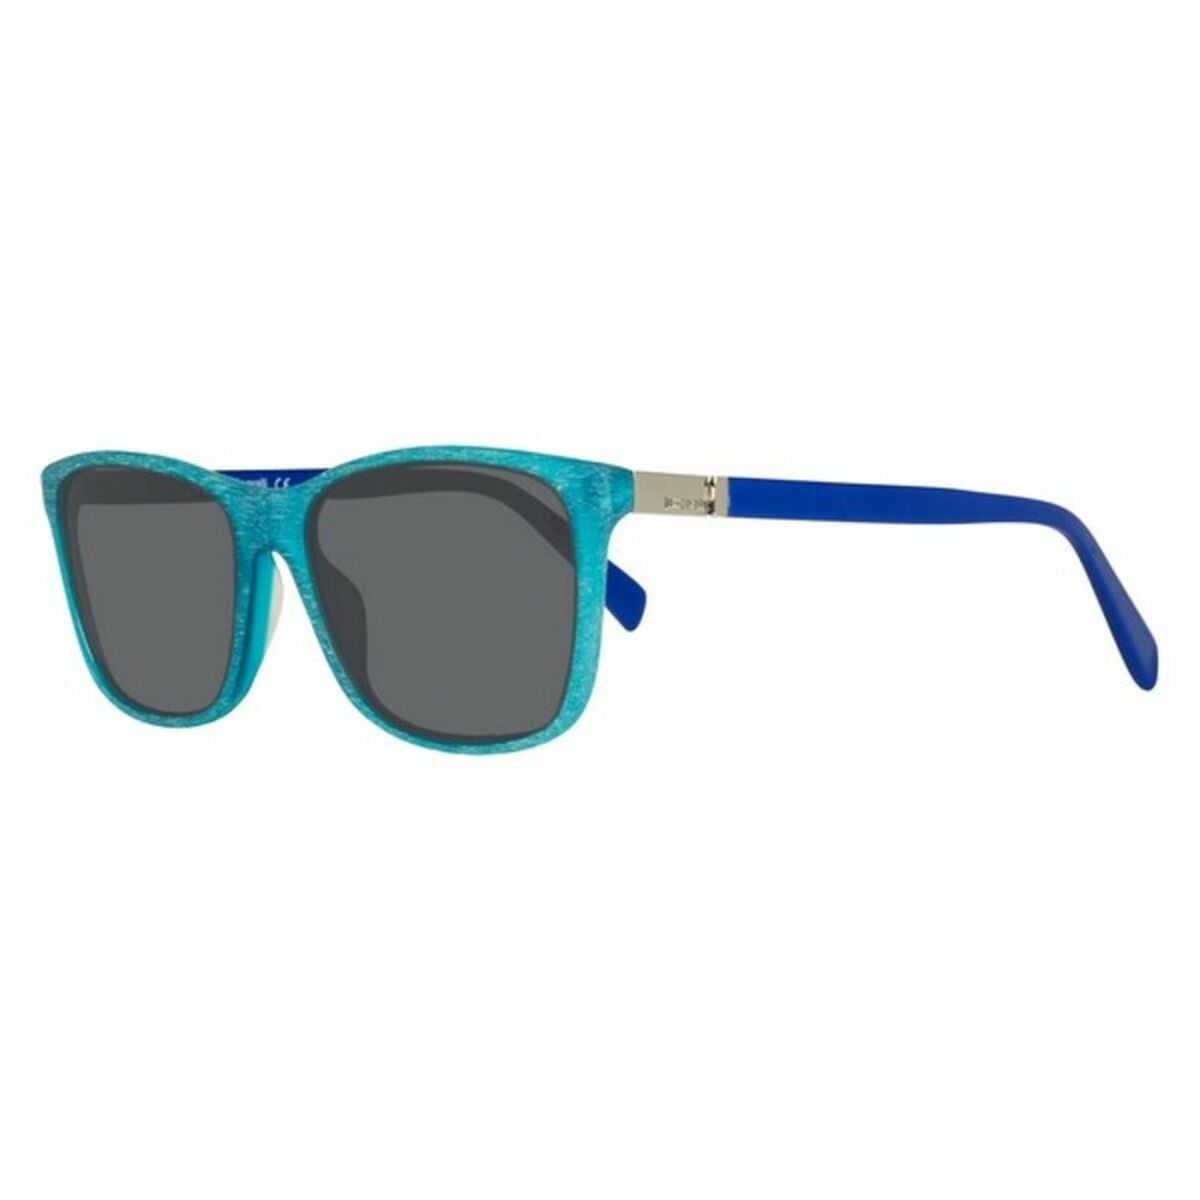 Unisex Sunglasses Just Cavalli